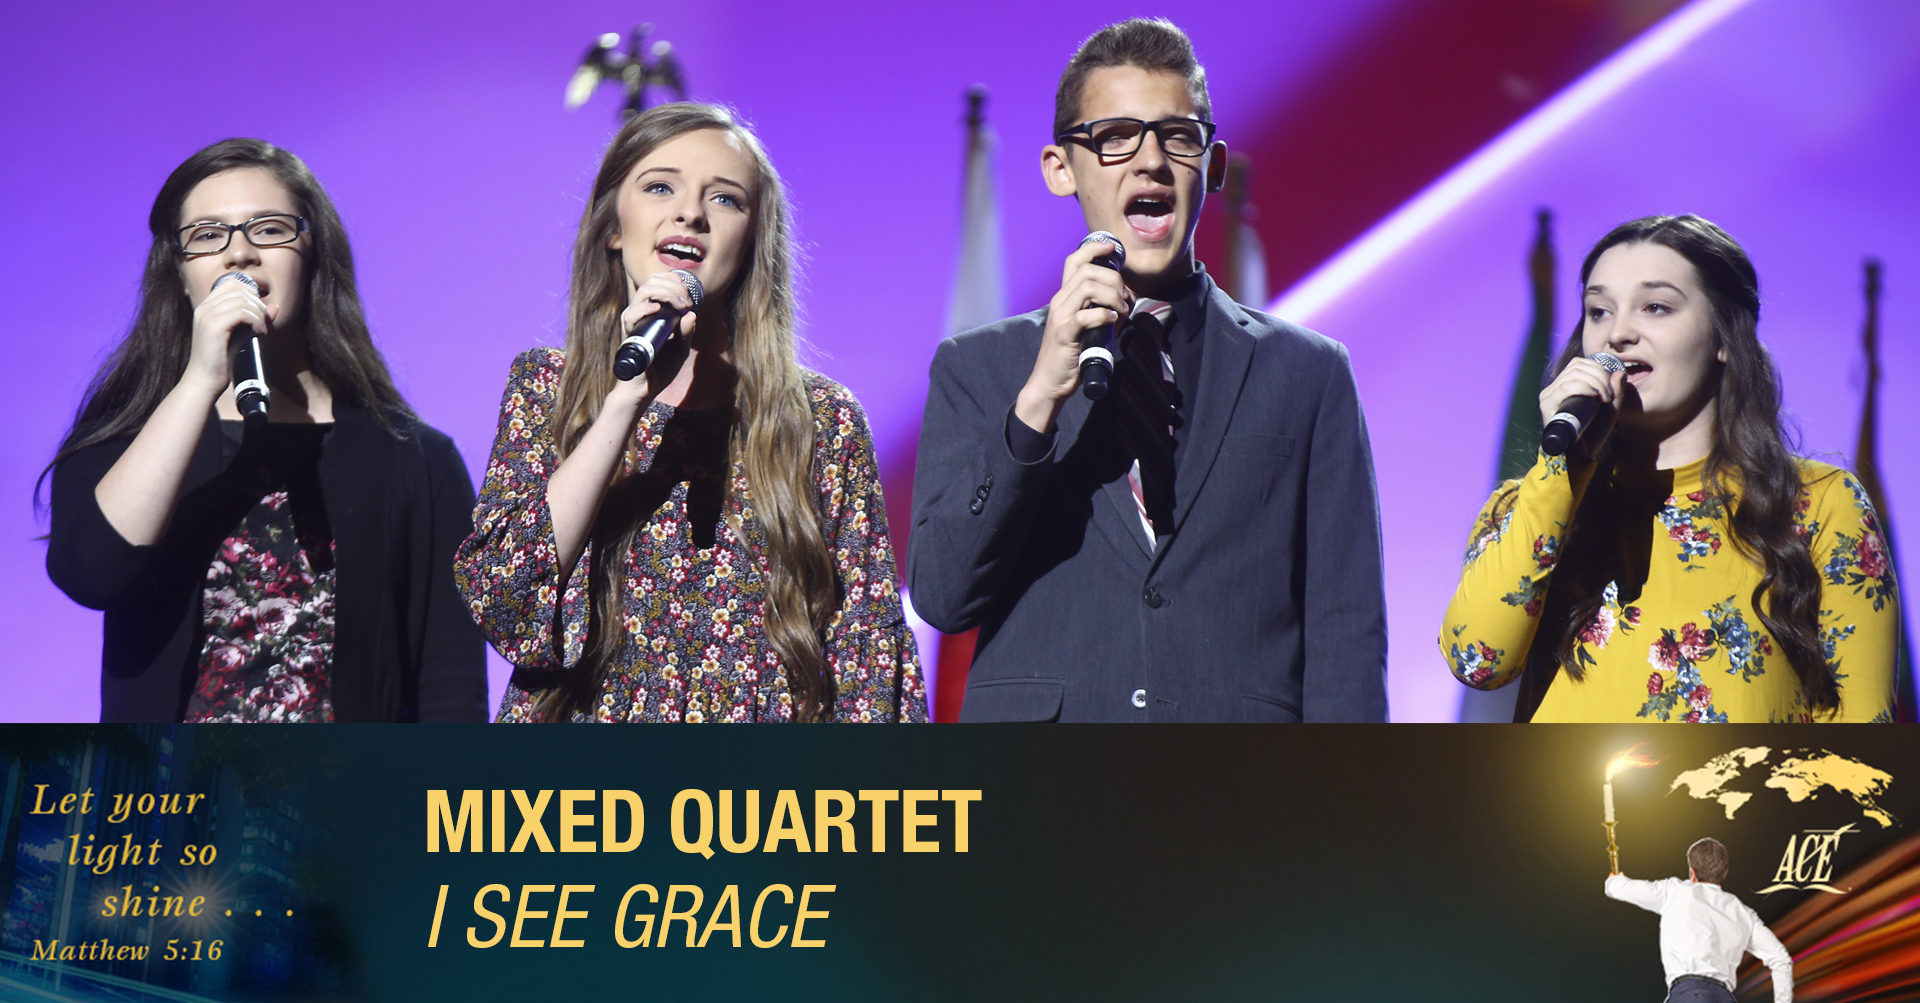 Mixed Quartet, "I See Grace" - ISC 2019